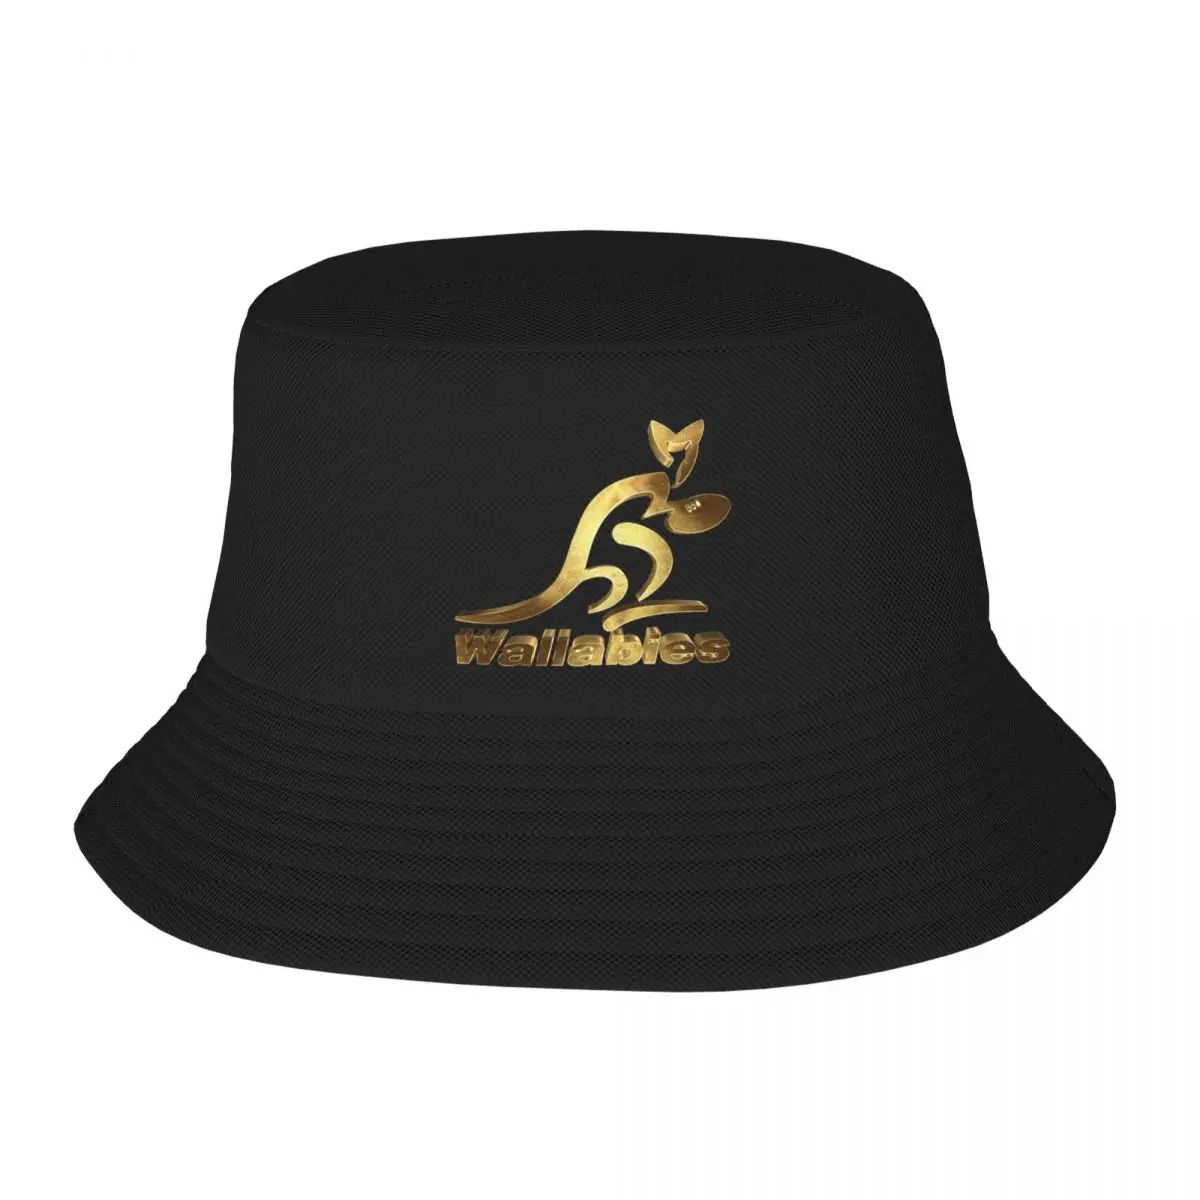 Новая австралийская золотая панама для регби Wallabies, рождественские шляпы, пляжные шляпы для вечеринок из пенопласта, мужские и женские 0